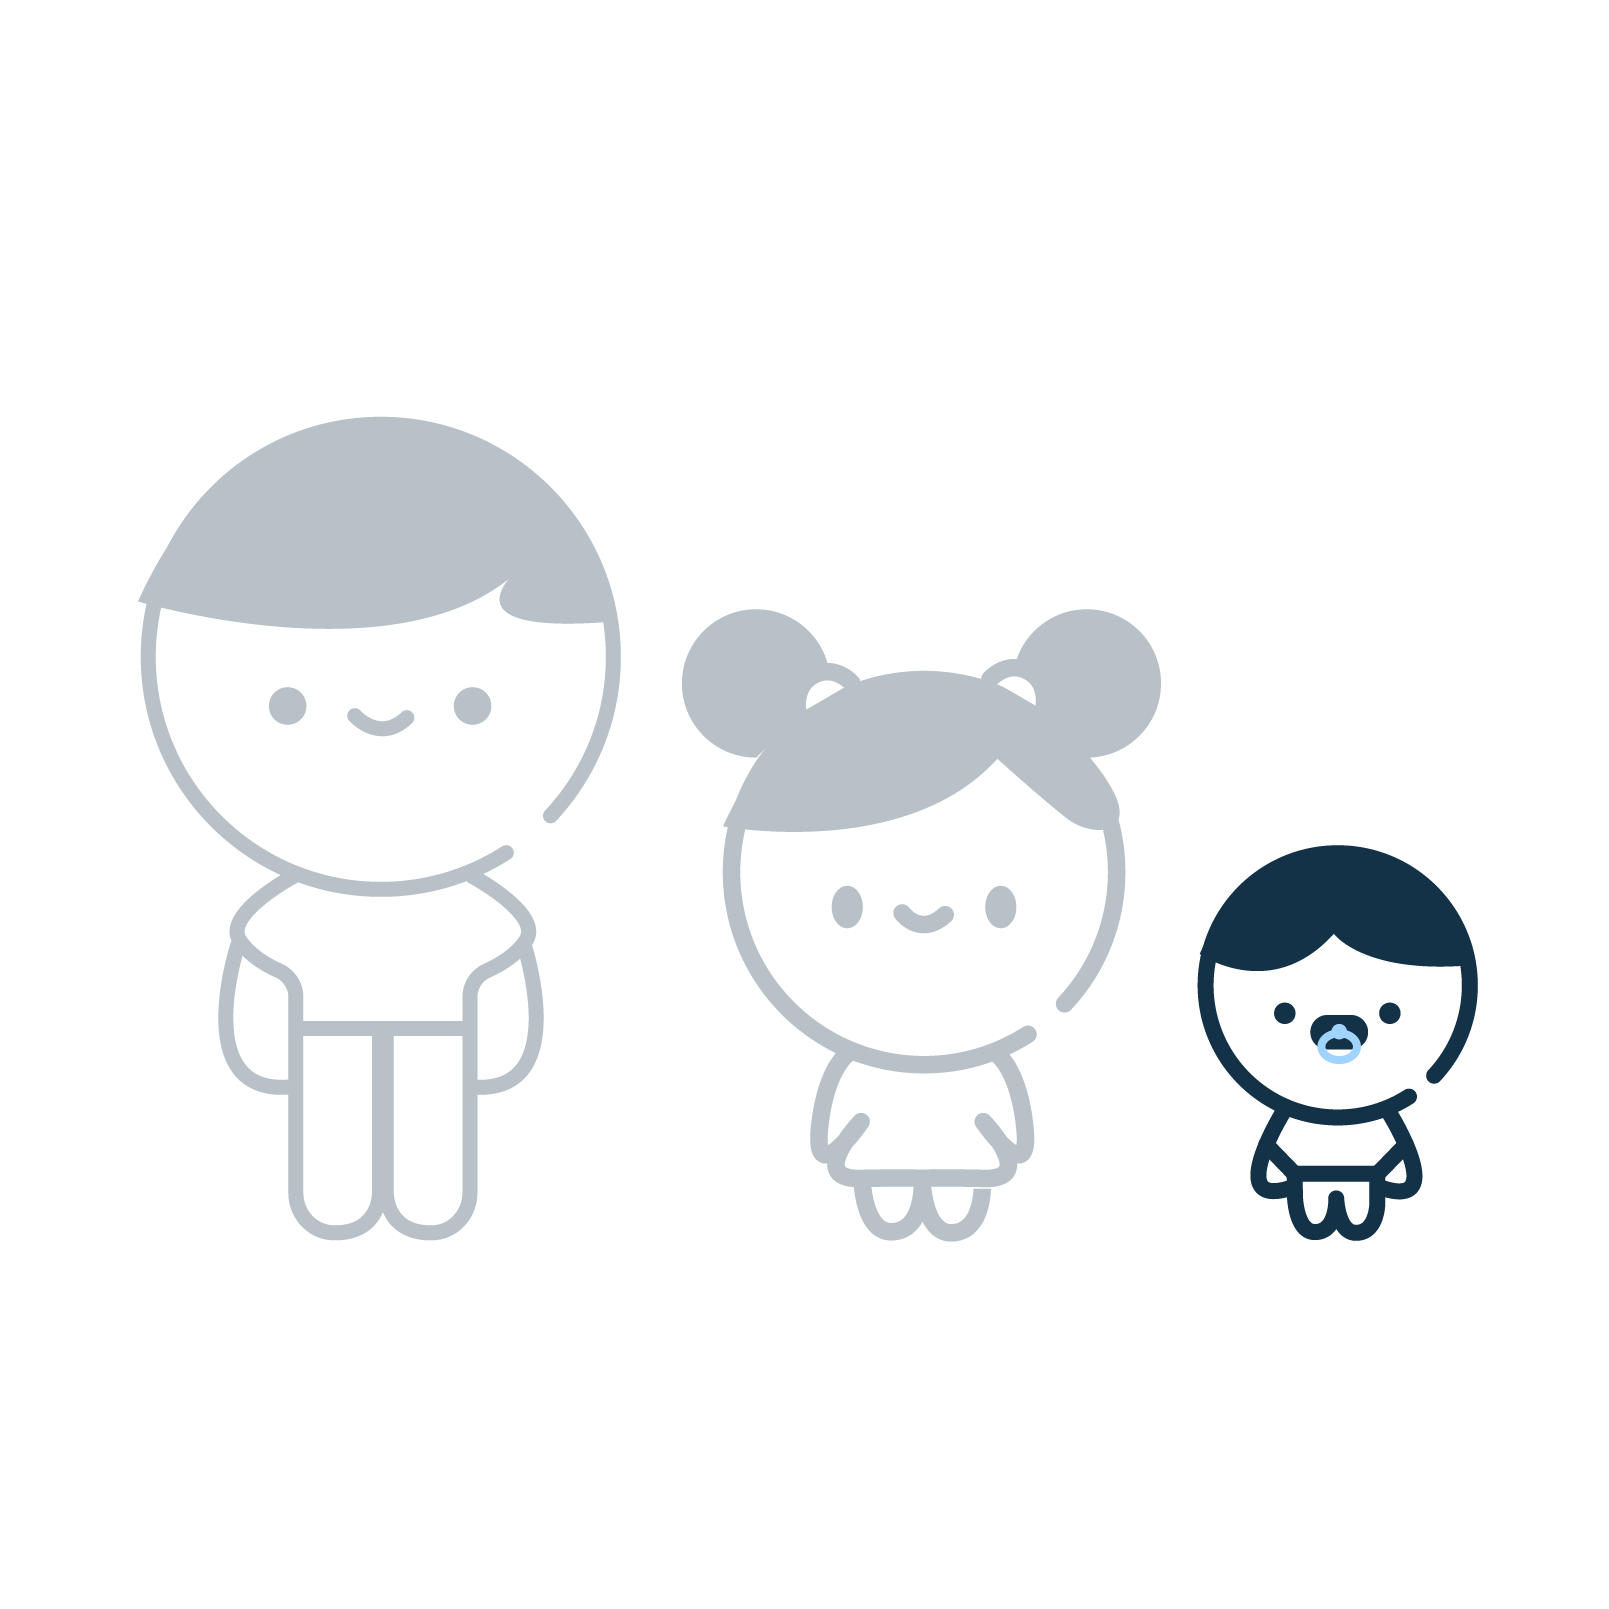 icone représentant un adulte, un enfant et un bébé, l'enfant et le l'adulte sont grisé, le bébé est couleur bleu nuit